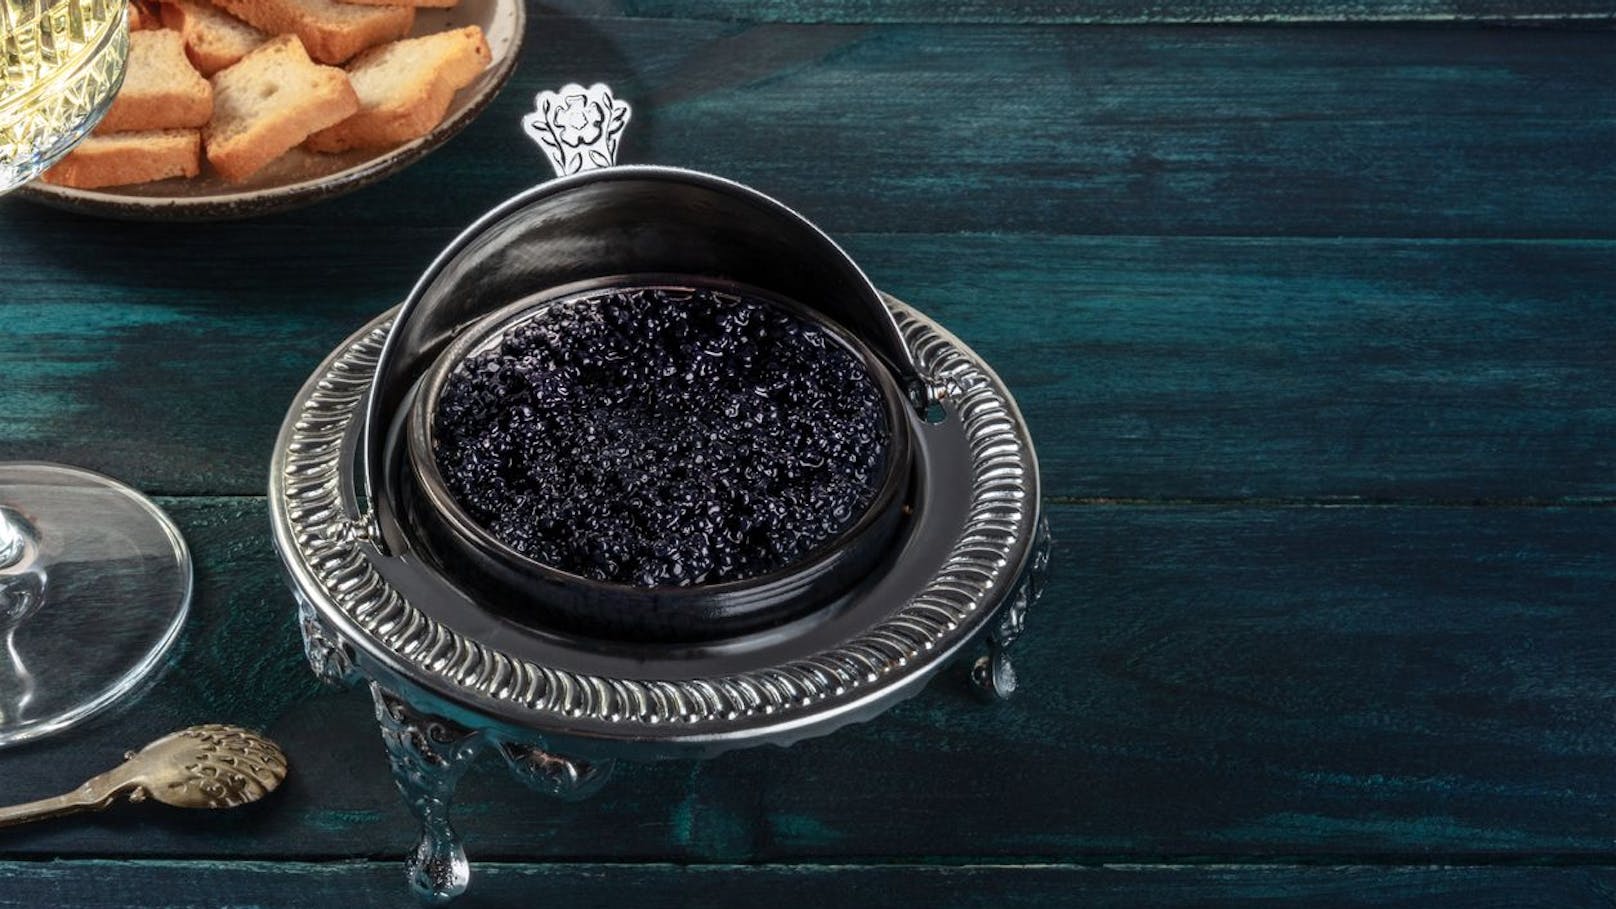 Handel mit illegalem Kaviar ist weitverbreitet